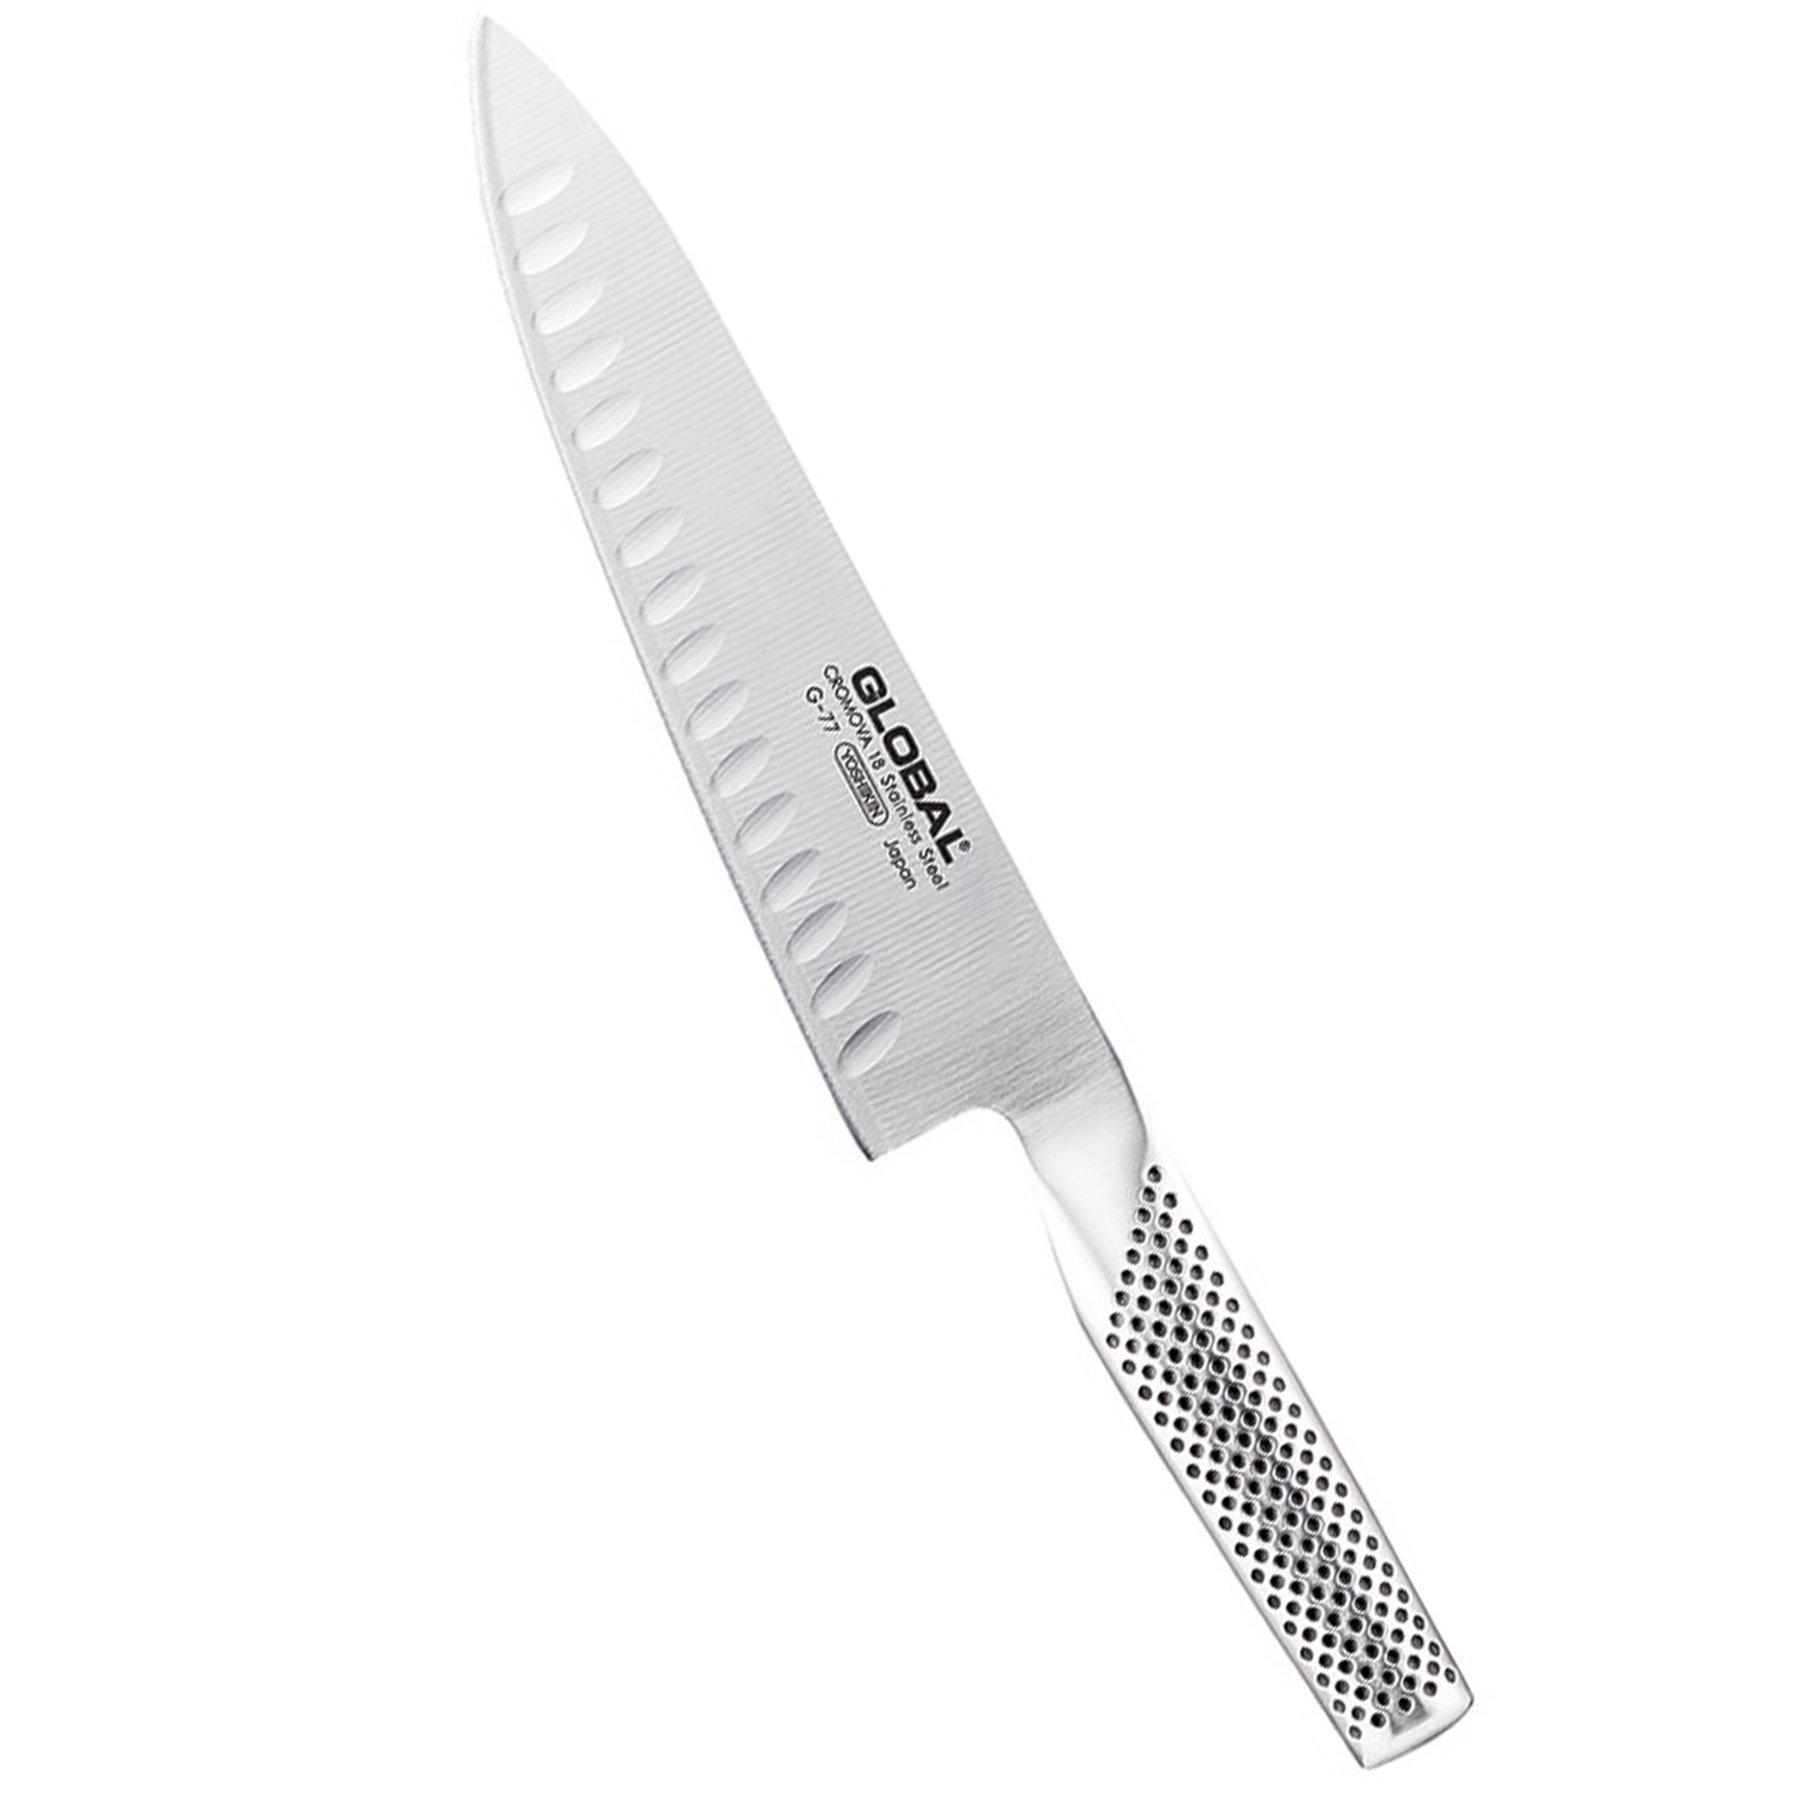 GLOBAL G-77 20 cm - nůž šéfkuchaře z nerezové oceli